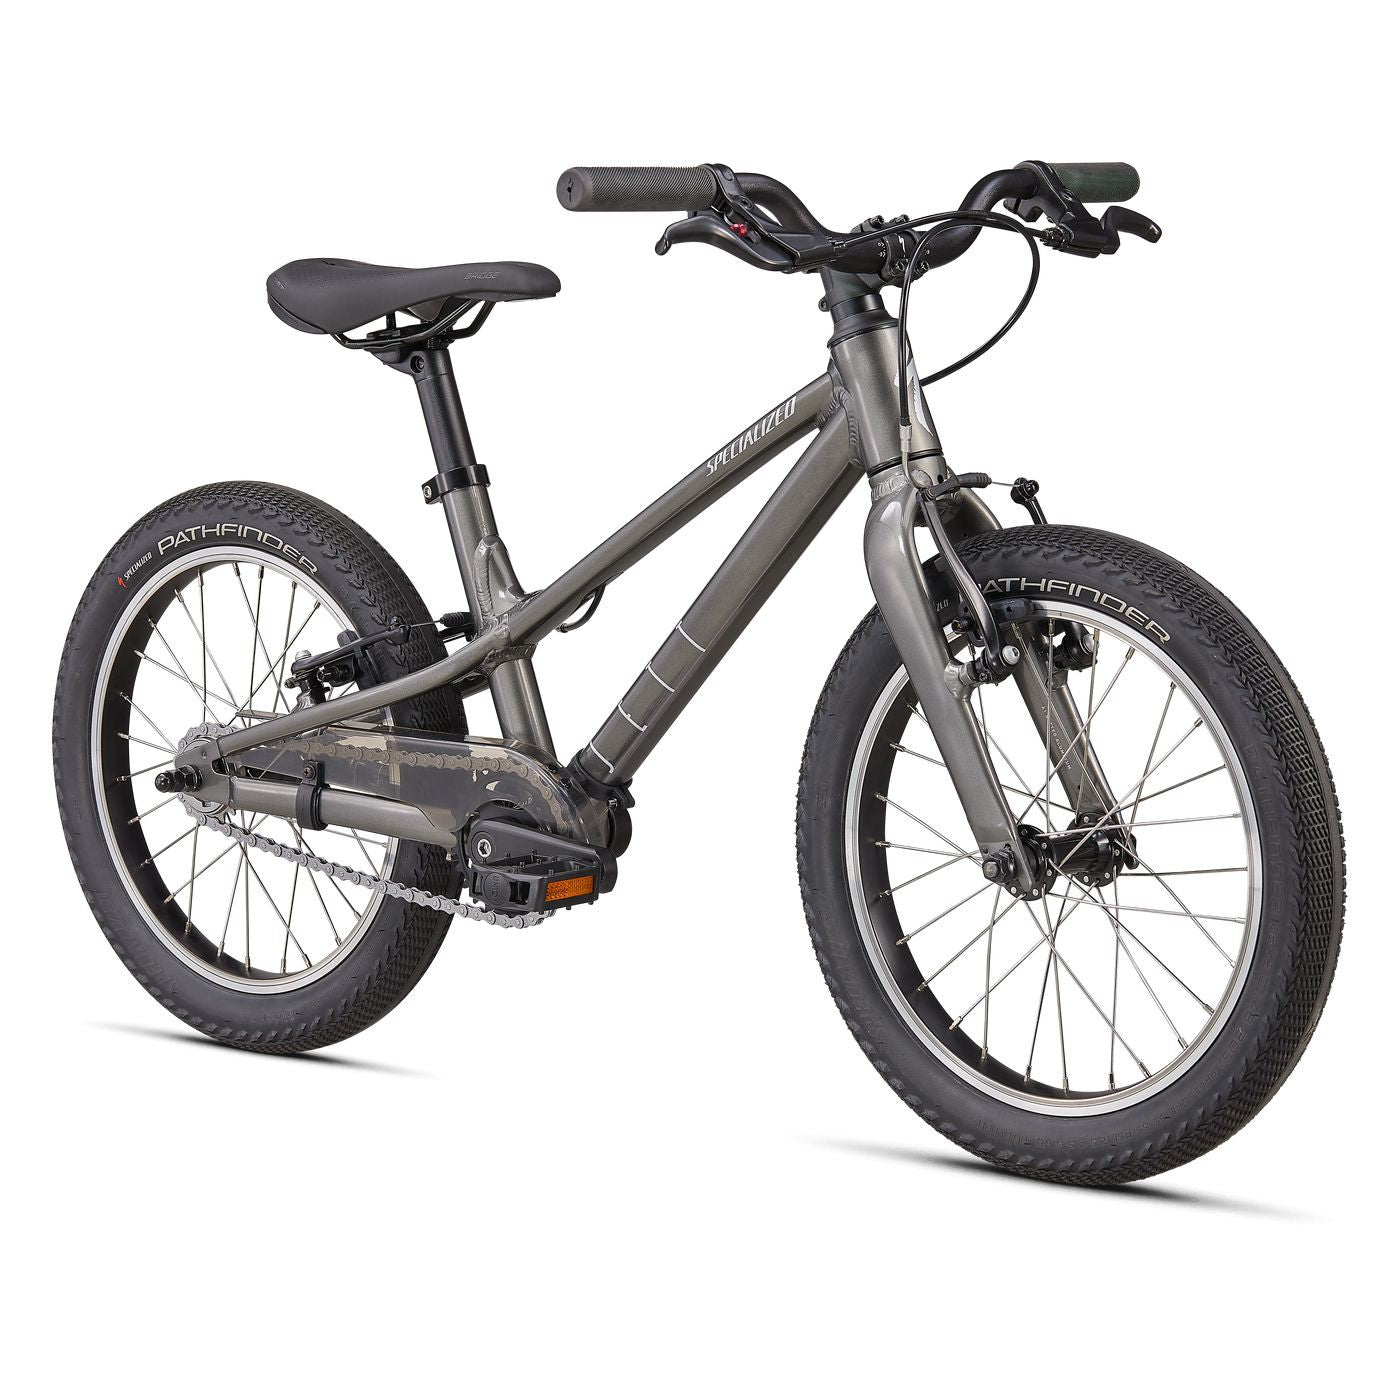 Specialized Jett 16" Single Speed Kids Bike - Bikes - Bicycle Warehouse